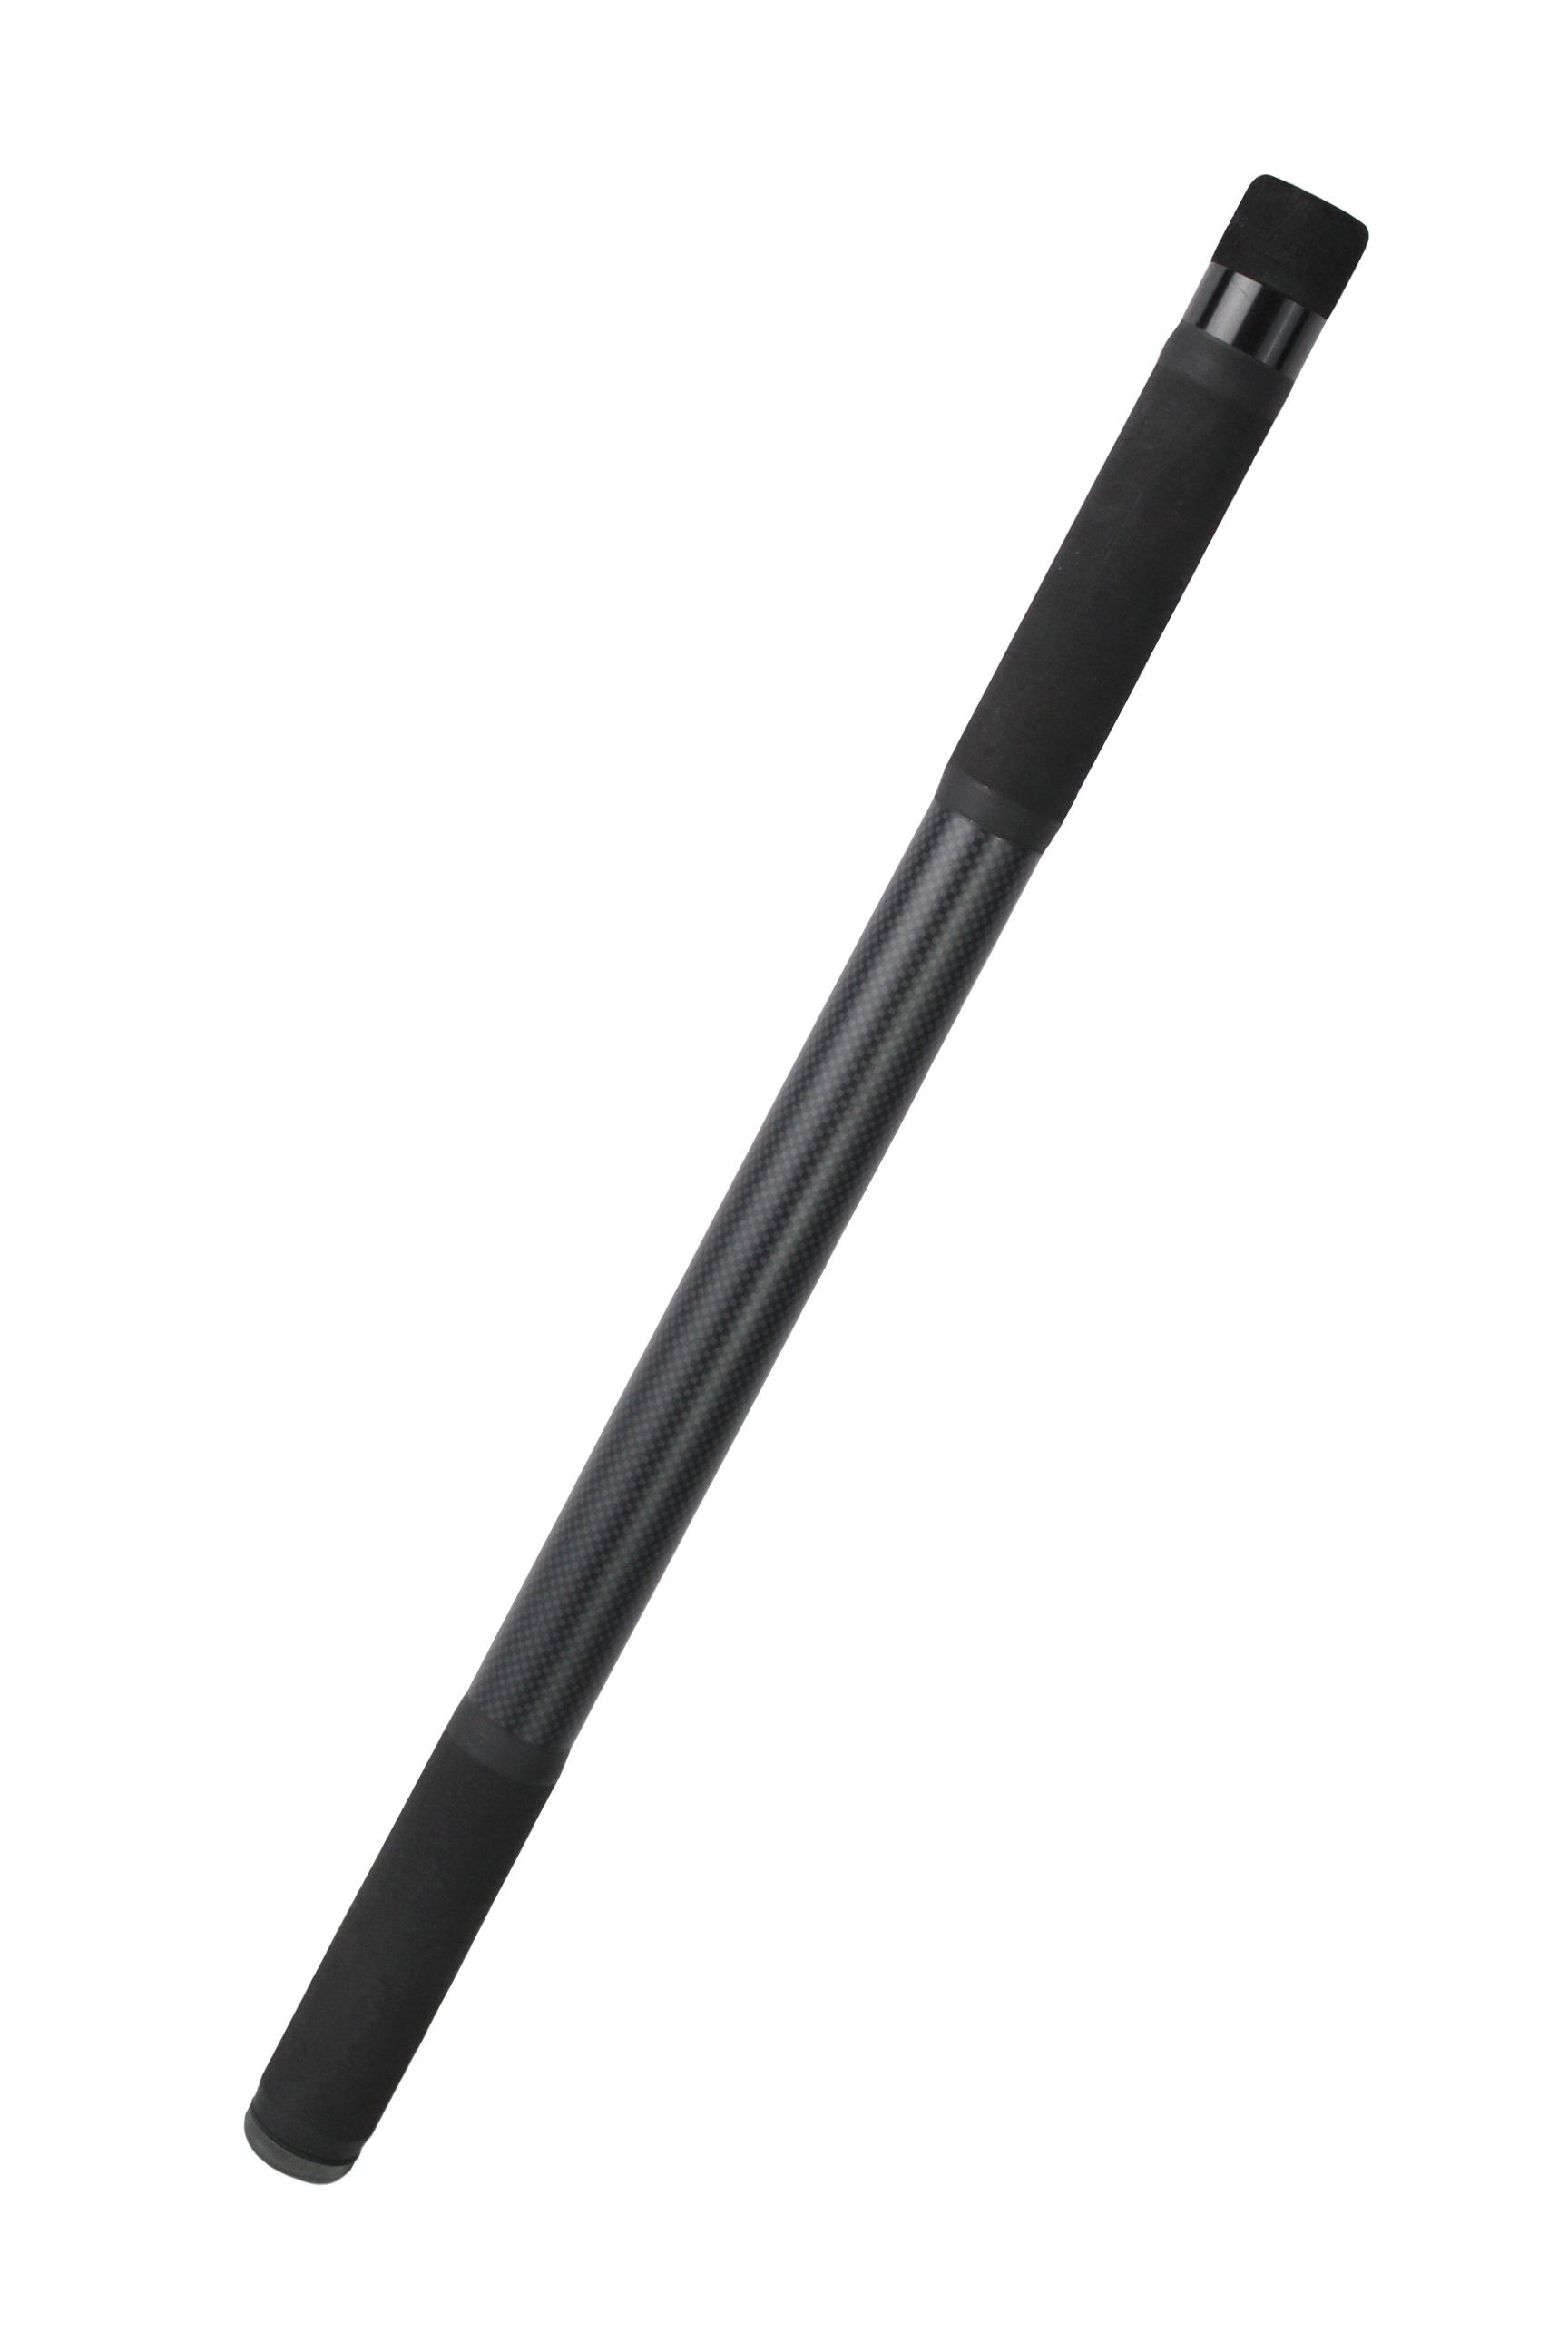 Ручка для подсачека Korum Opportunist Xtnd 1,8м - фото 1